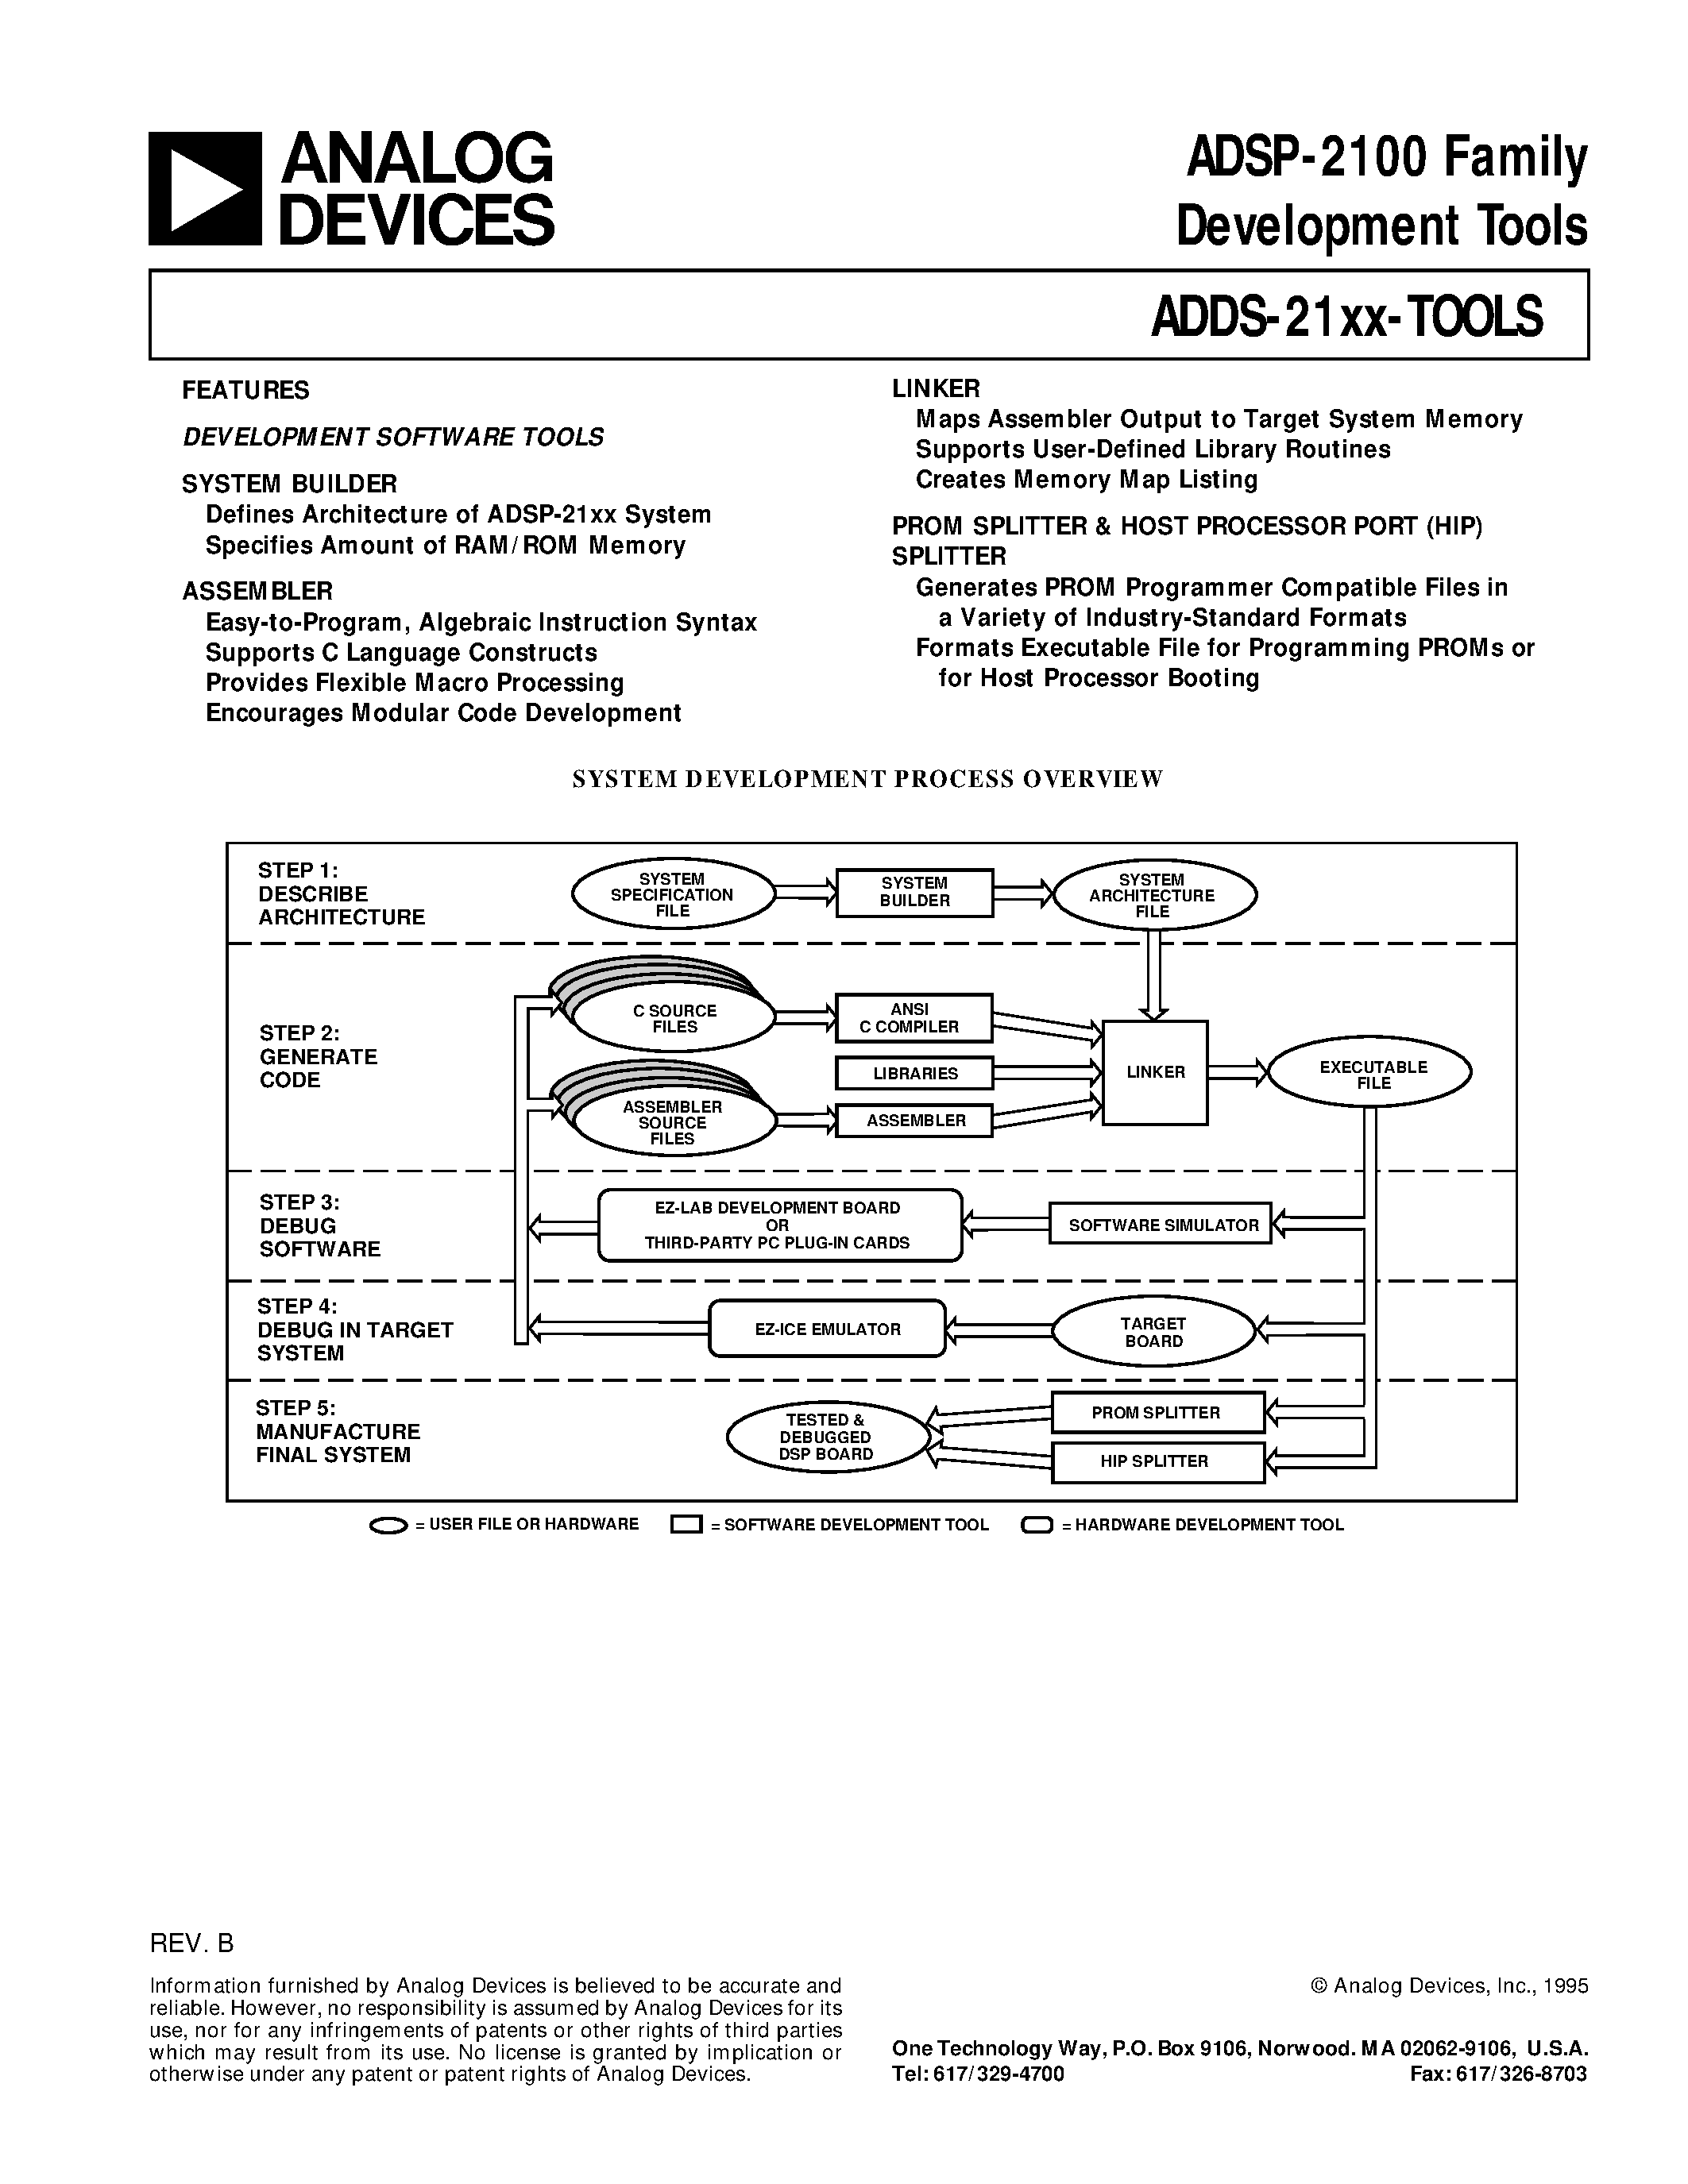 Даташит ADDS-2101-3V - ADSP-2100 Family Development Tools страница 1